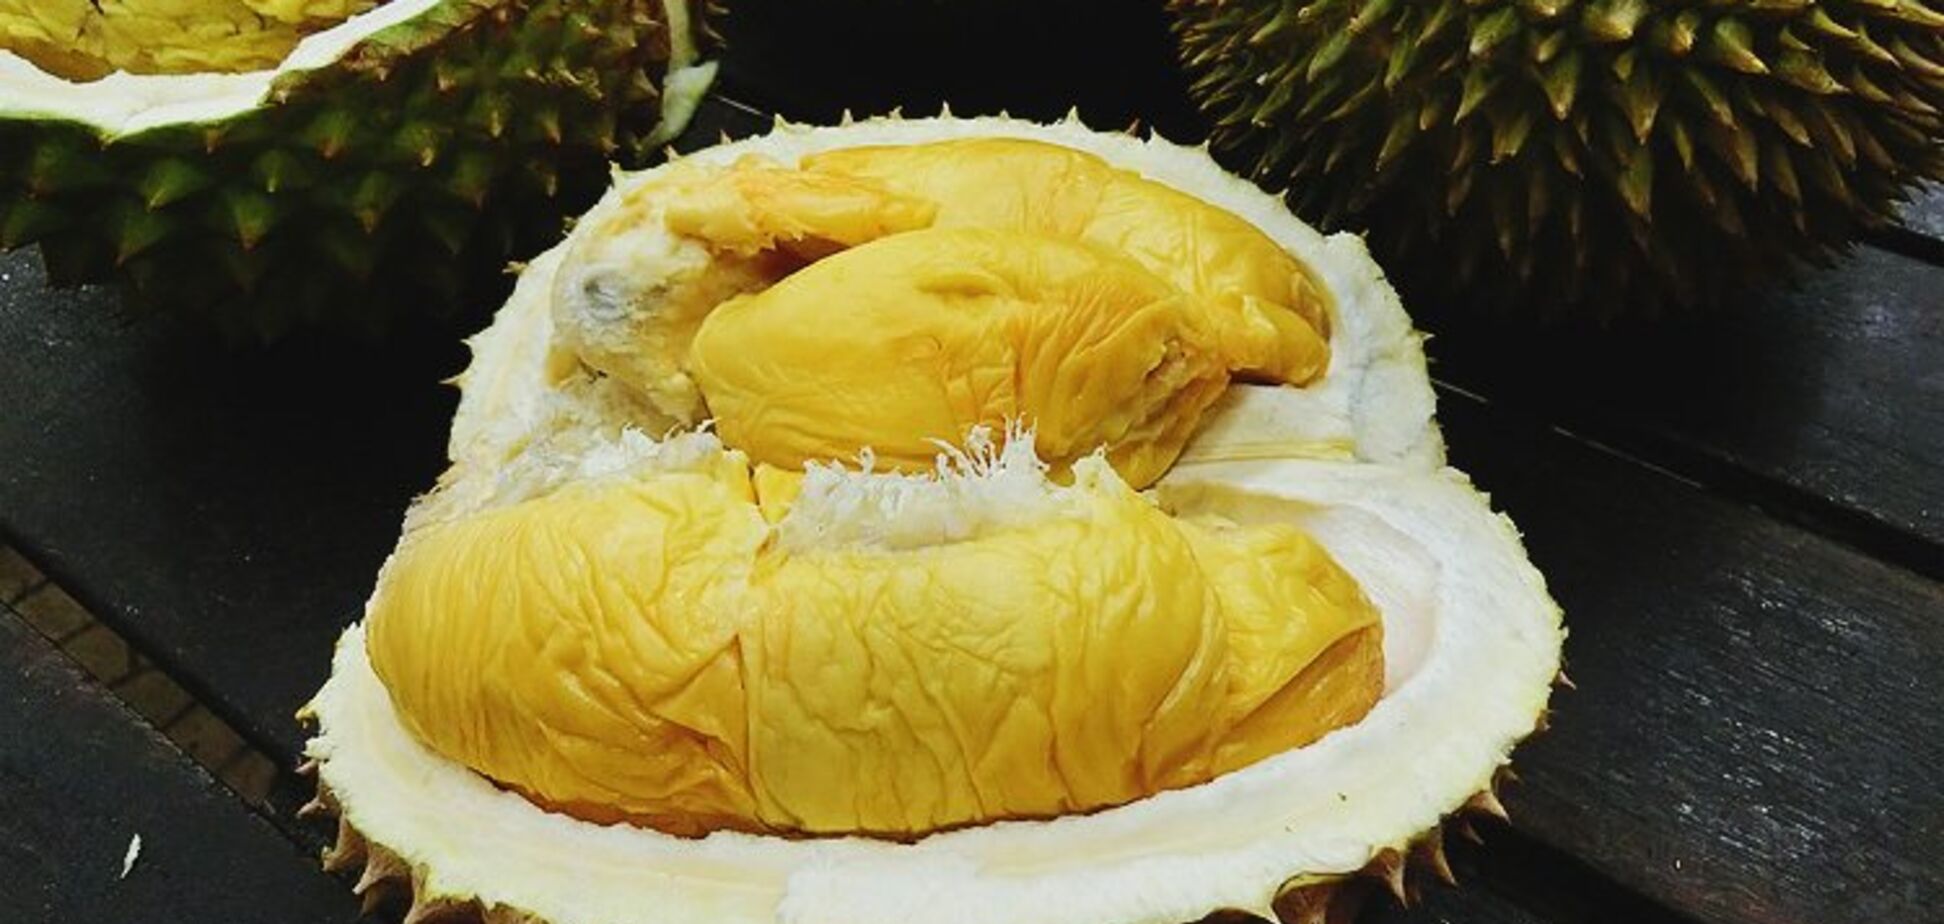 Сотни людей эвакуировали из-за дуриана: что это за фрукт и как его едят